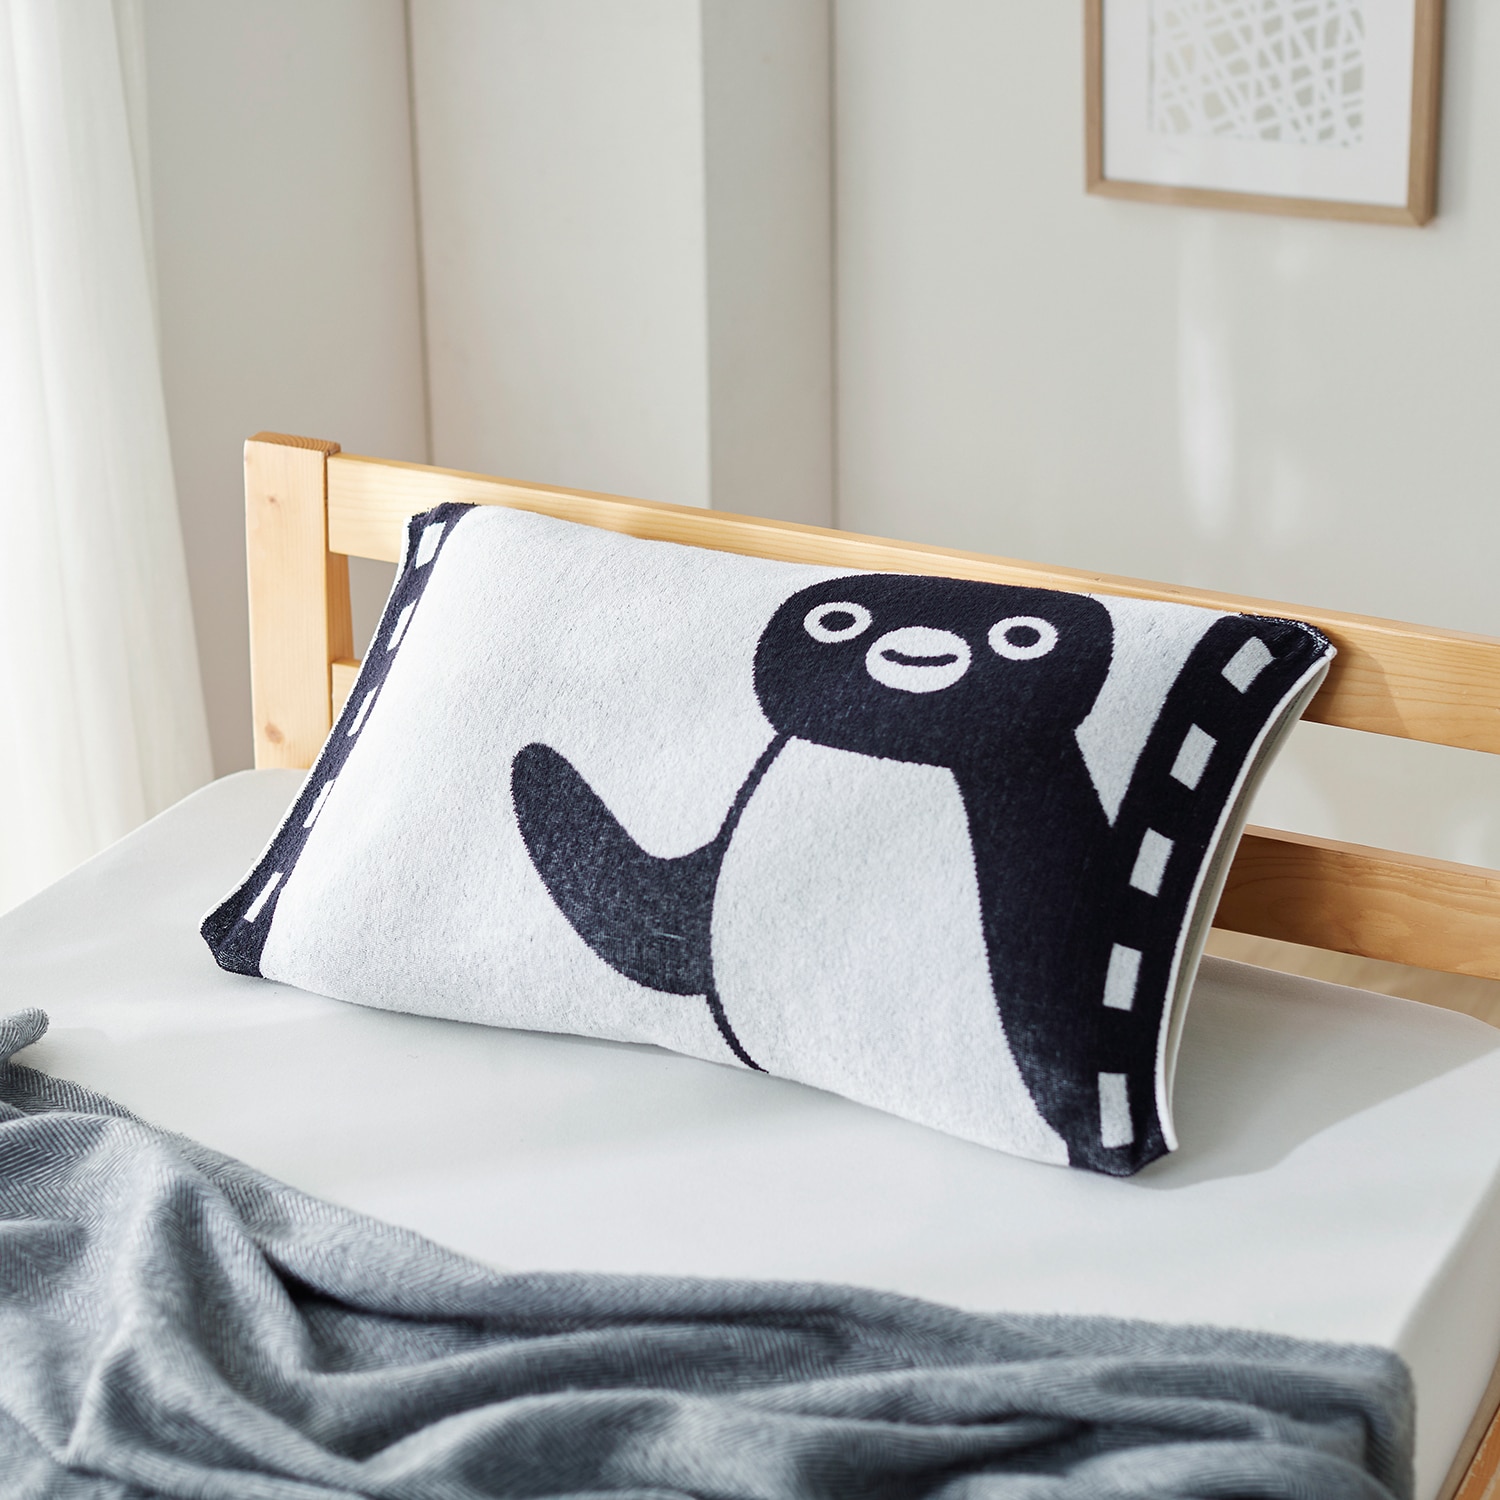 のびのび枕カバー「Suicaのペンギン」